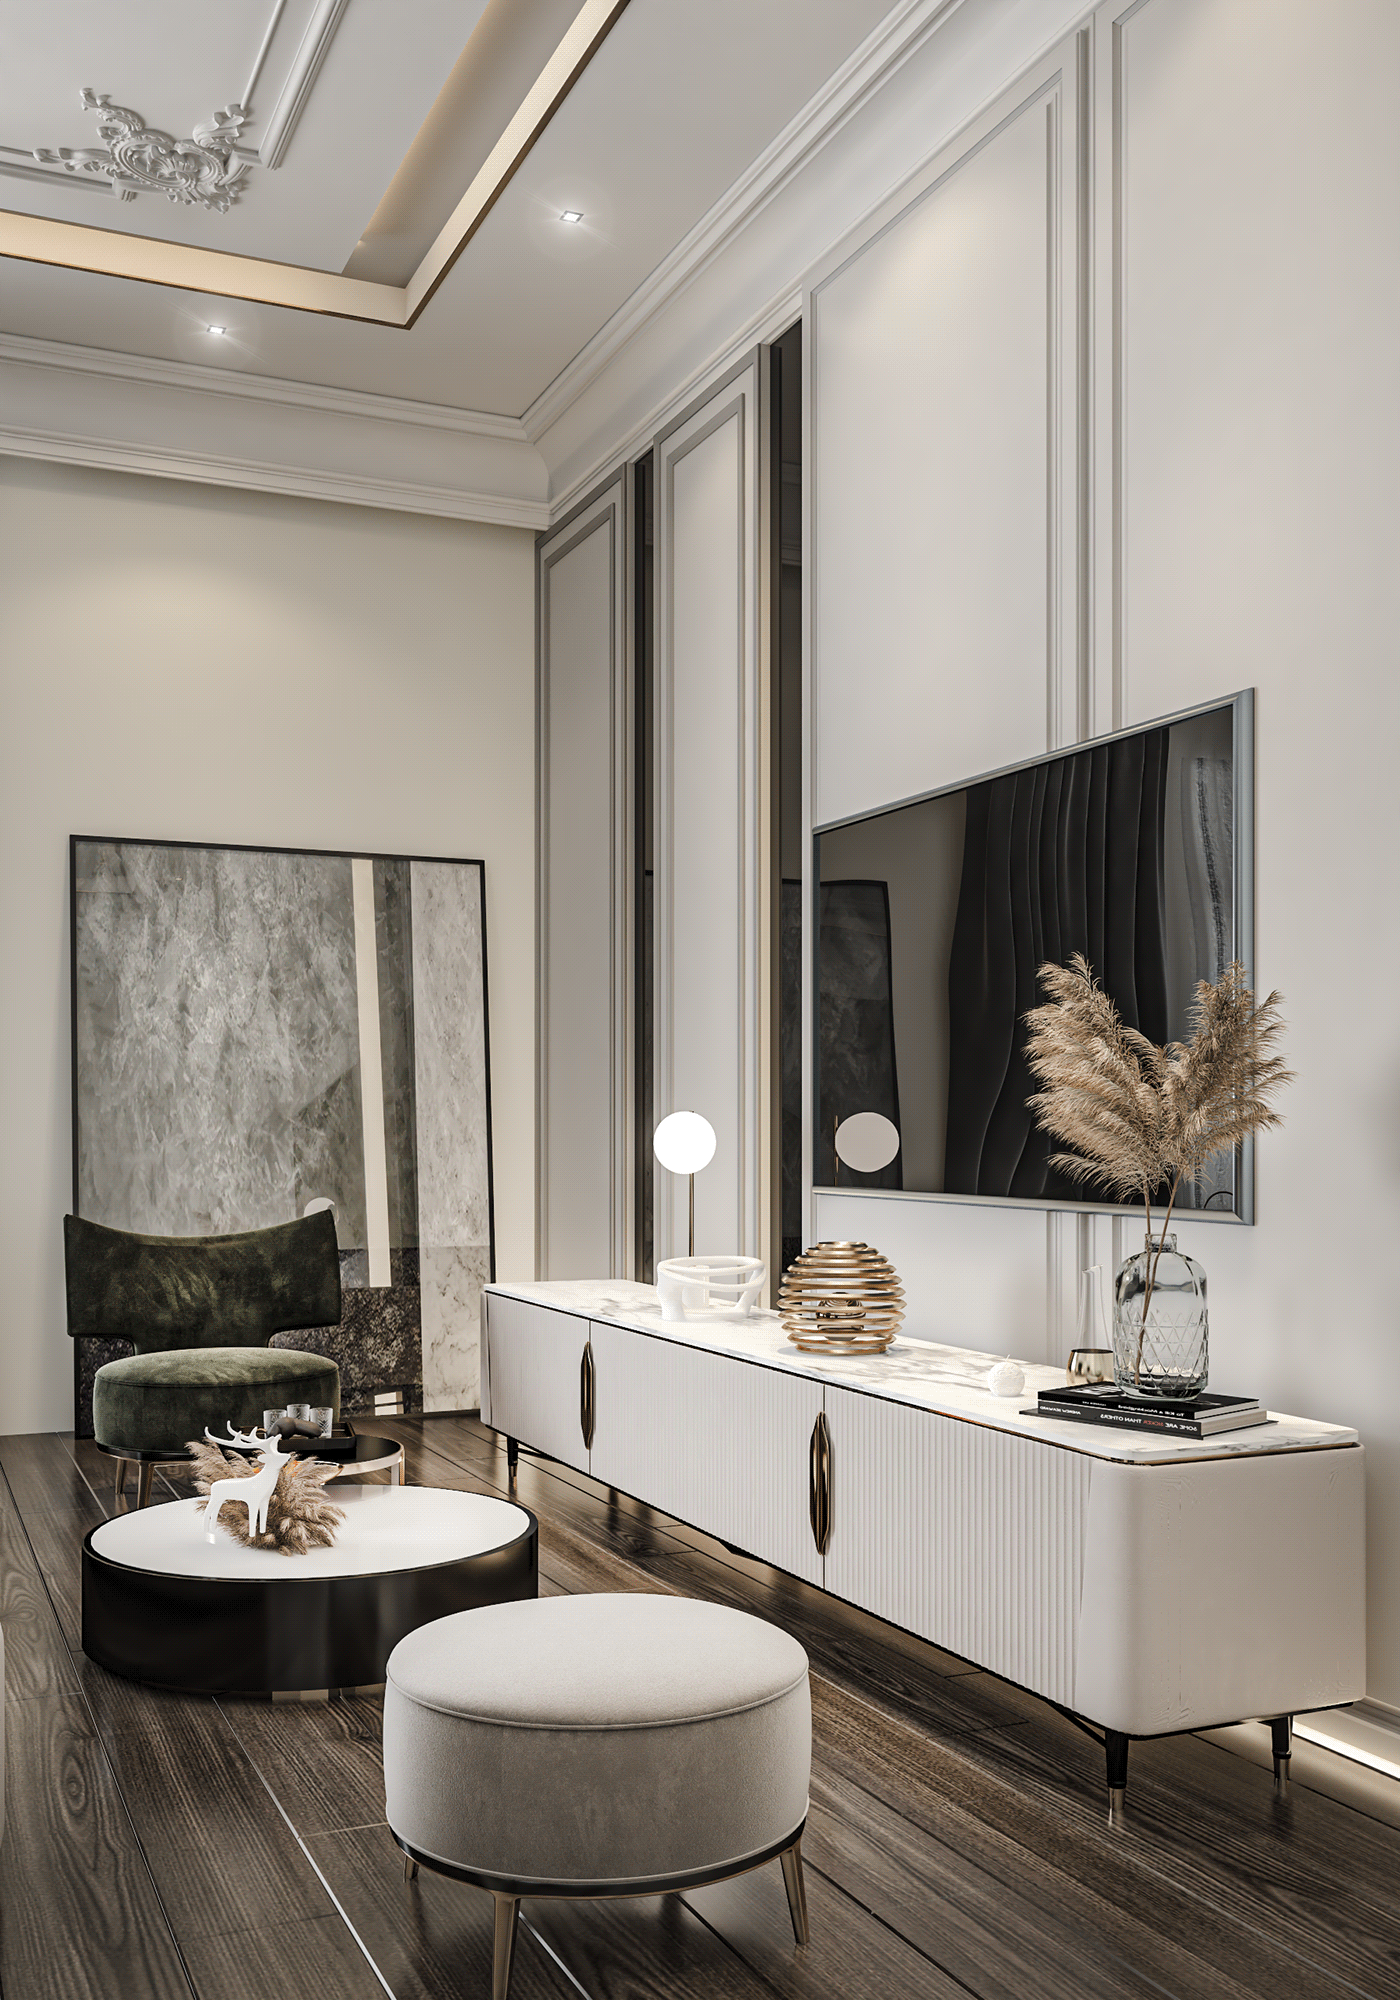 architecture modern visualization interior design  corona Render 3ds max wall design bedroom cabinets bedrrom